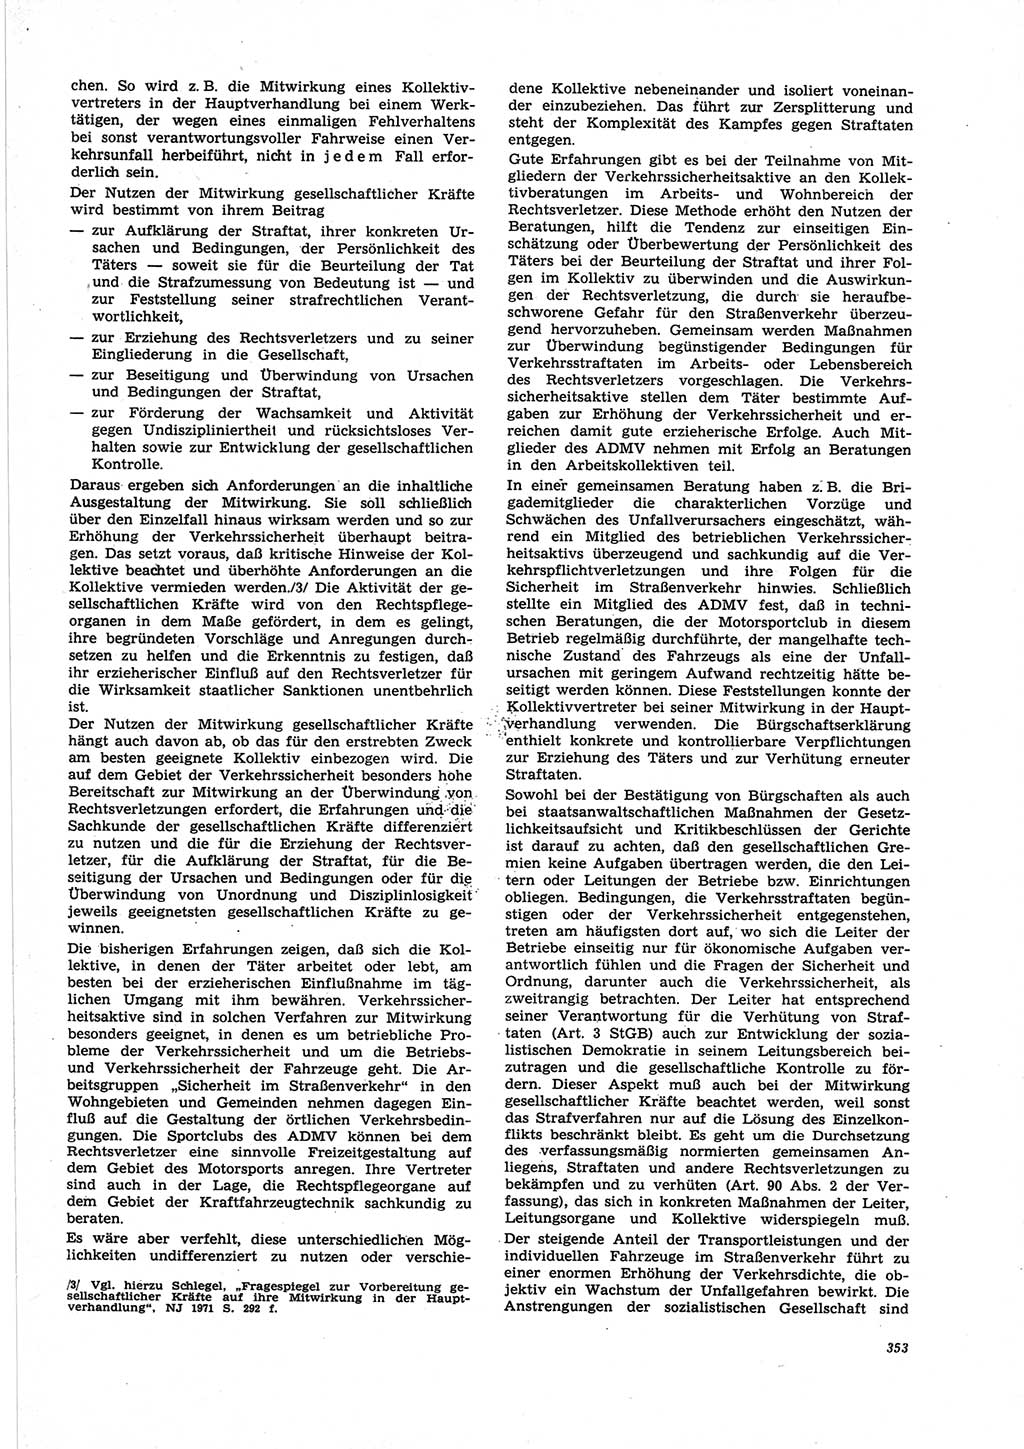 Neue Justiz (NJ), Zeitschrift für Recht und Rechtswissenschaft [Deutsche Demokratische Republik (DDR)], 25. Jahrgang 1971, Seite 353 (NJ DDR 1971, S. 353)